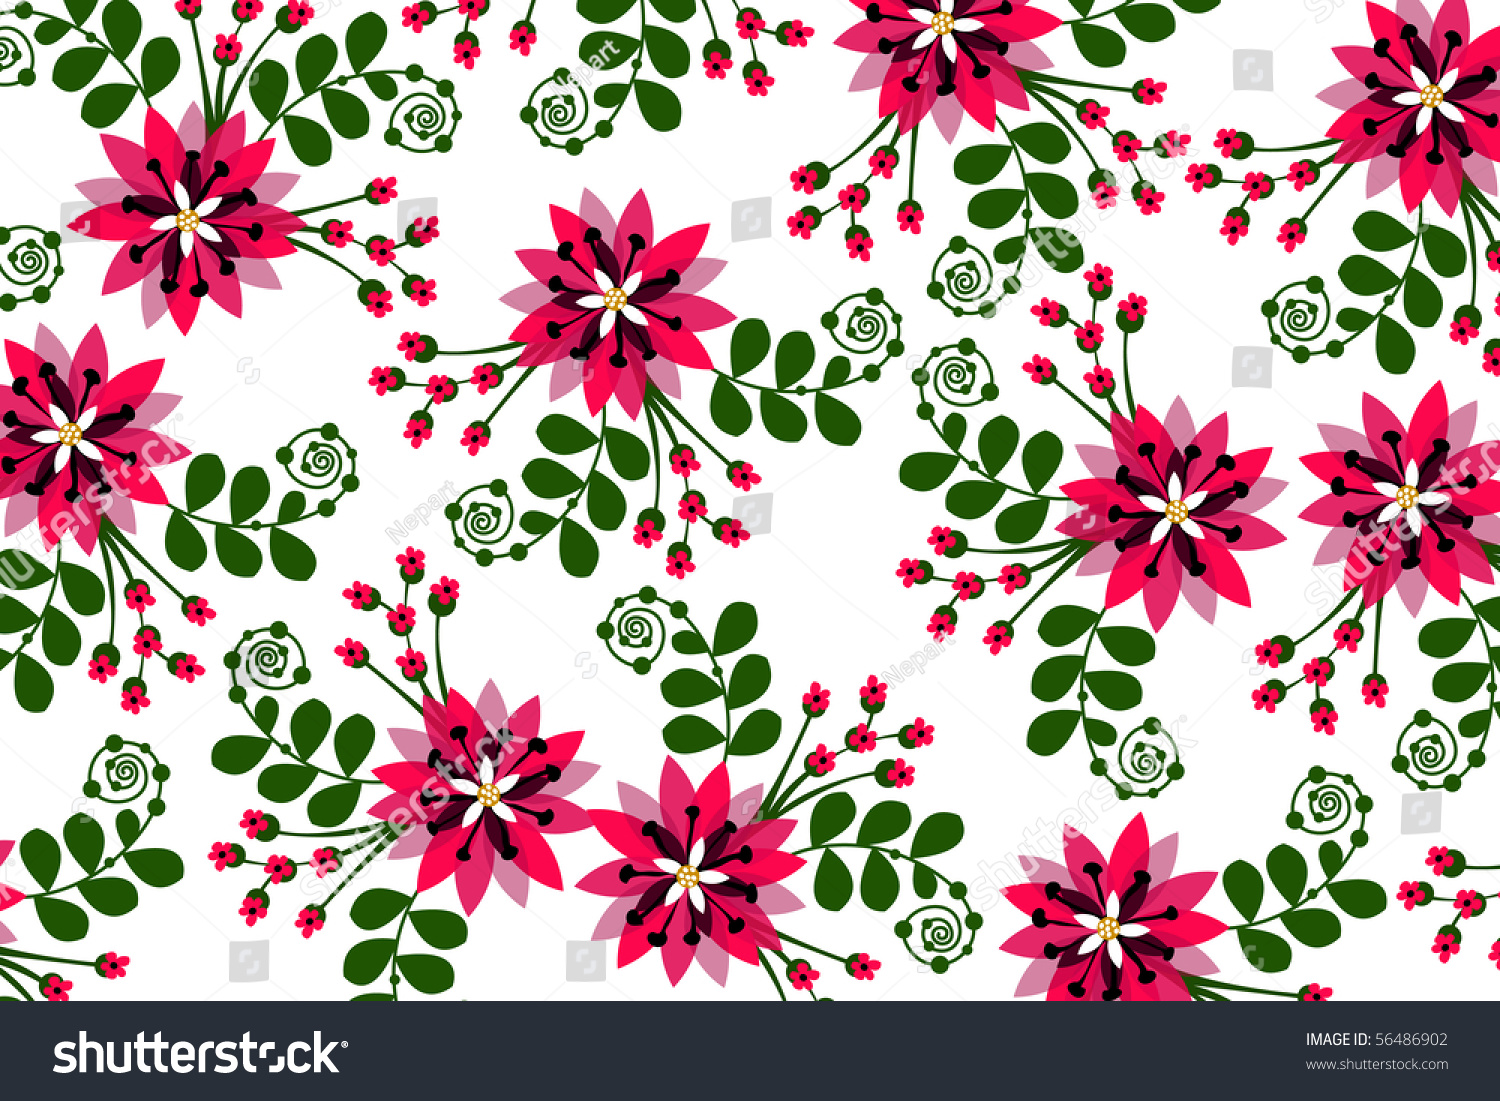 Flower Stock Vector Illustration 56486902 : Shutterstock